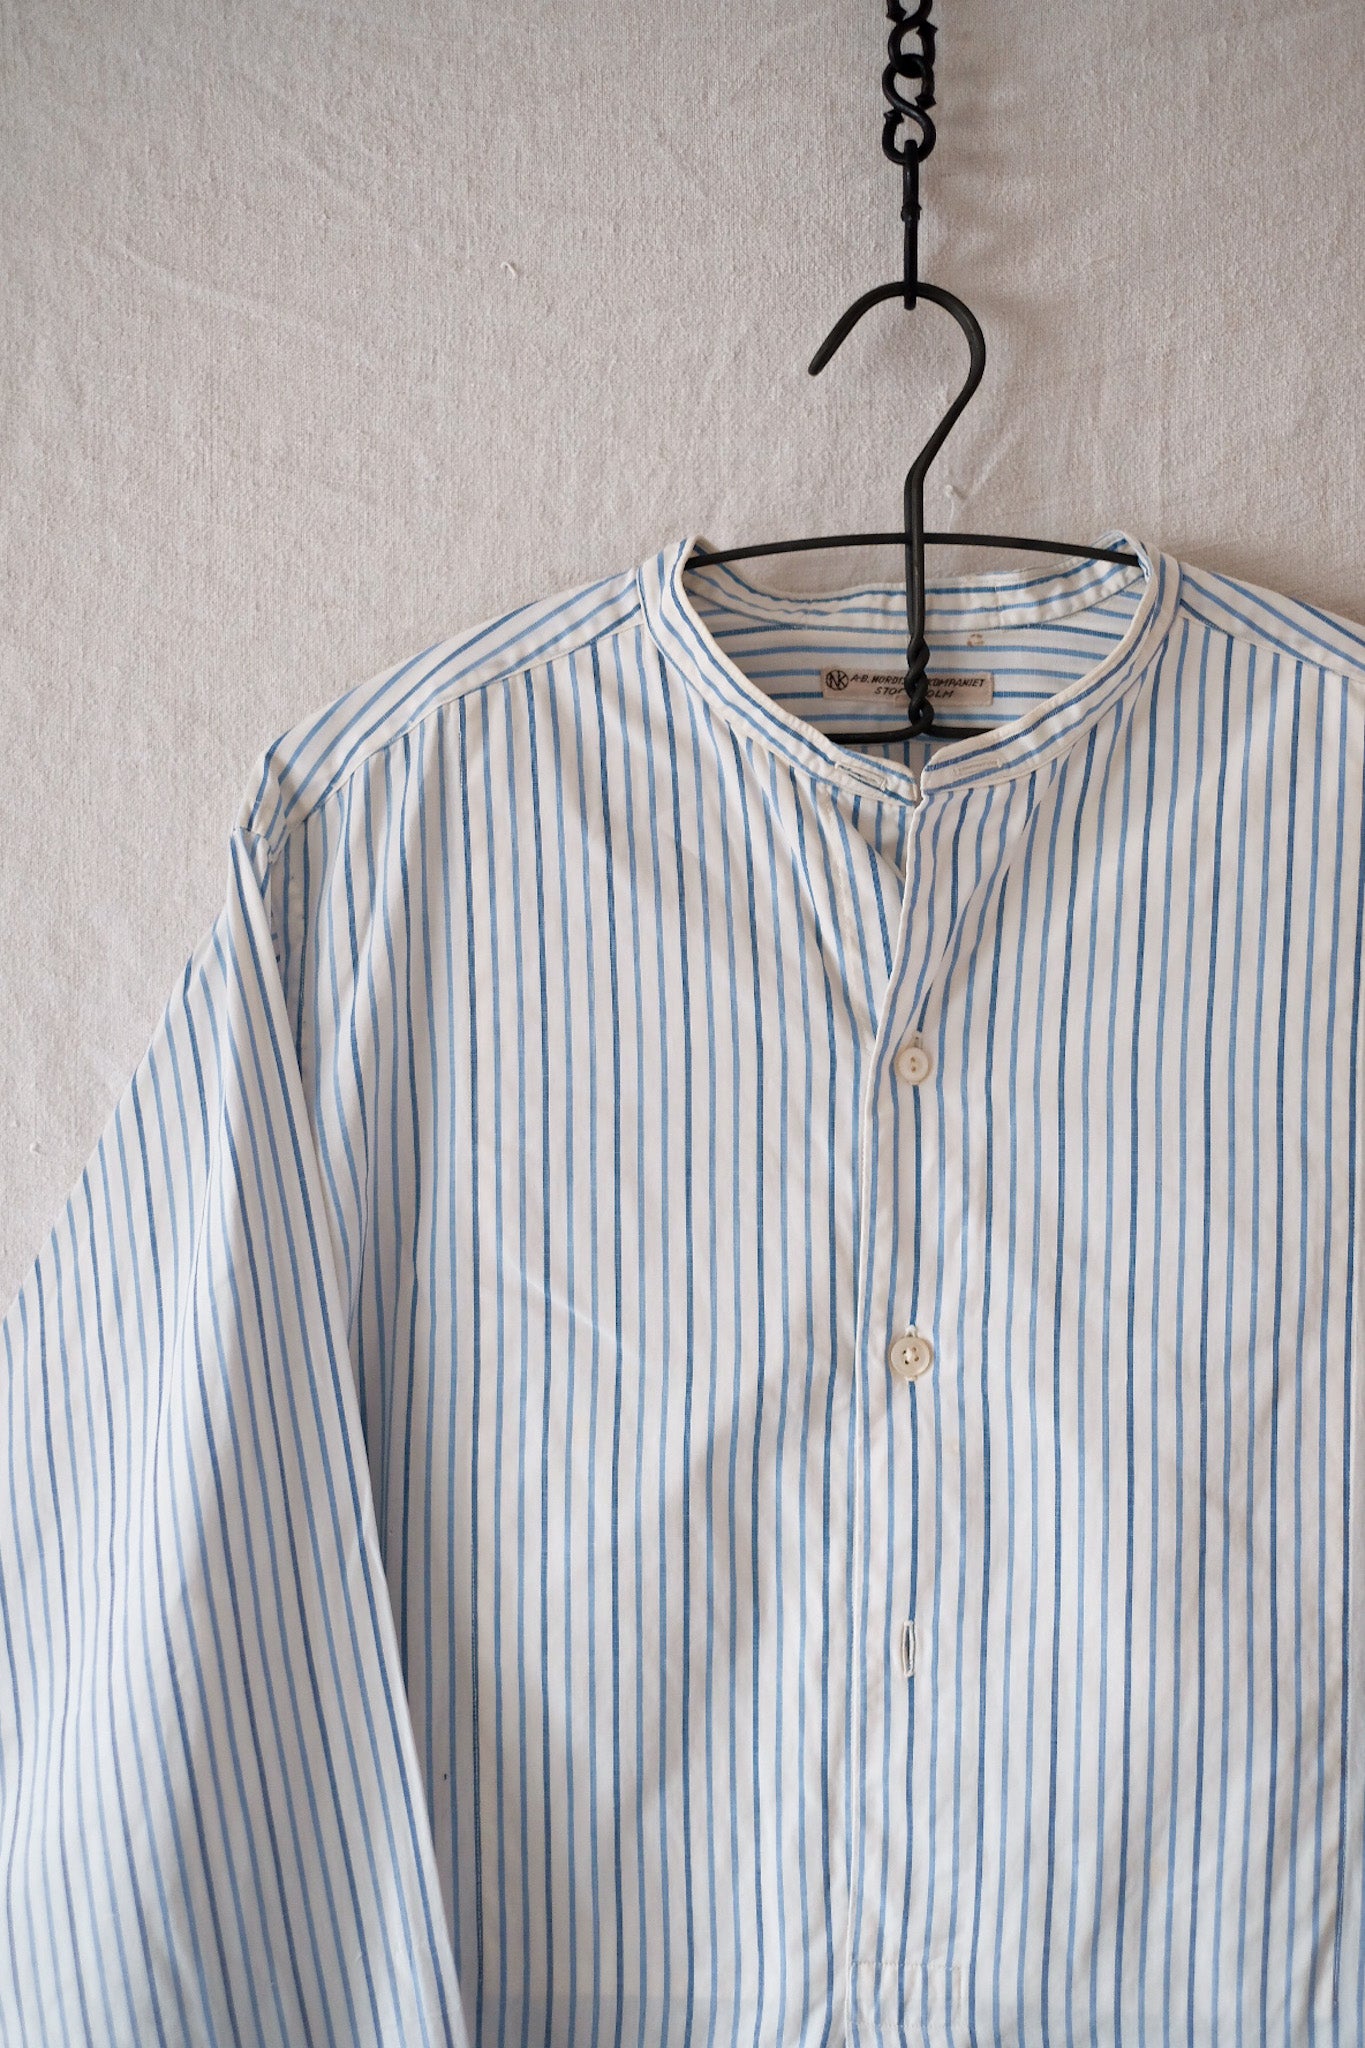 [〜50年代]歐洲復古禮服襯衫